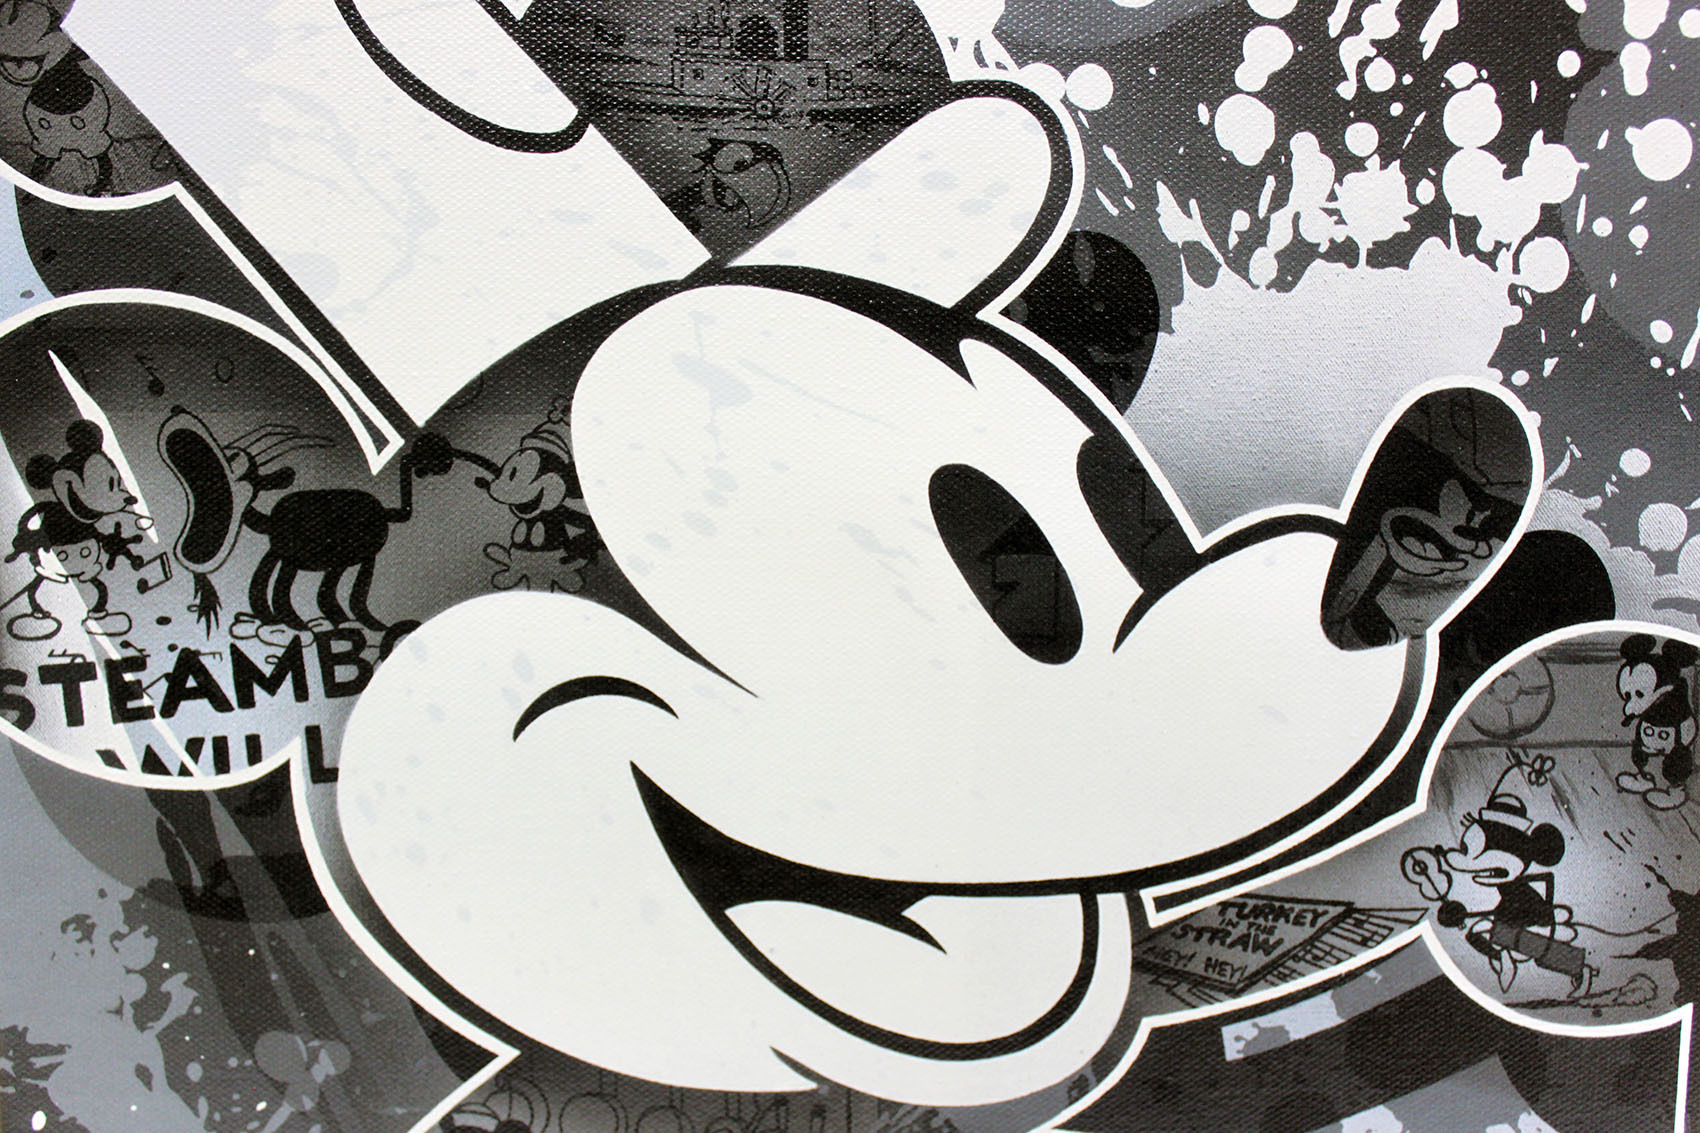 ディズニー ミッキーマウス 蒸気船ウィリー 作品証明書 展示用フック付 限定1500部キャンバスジークレ ディズニー絵画 ポスター